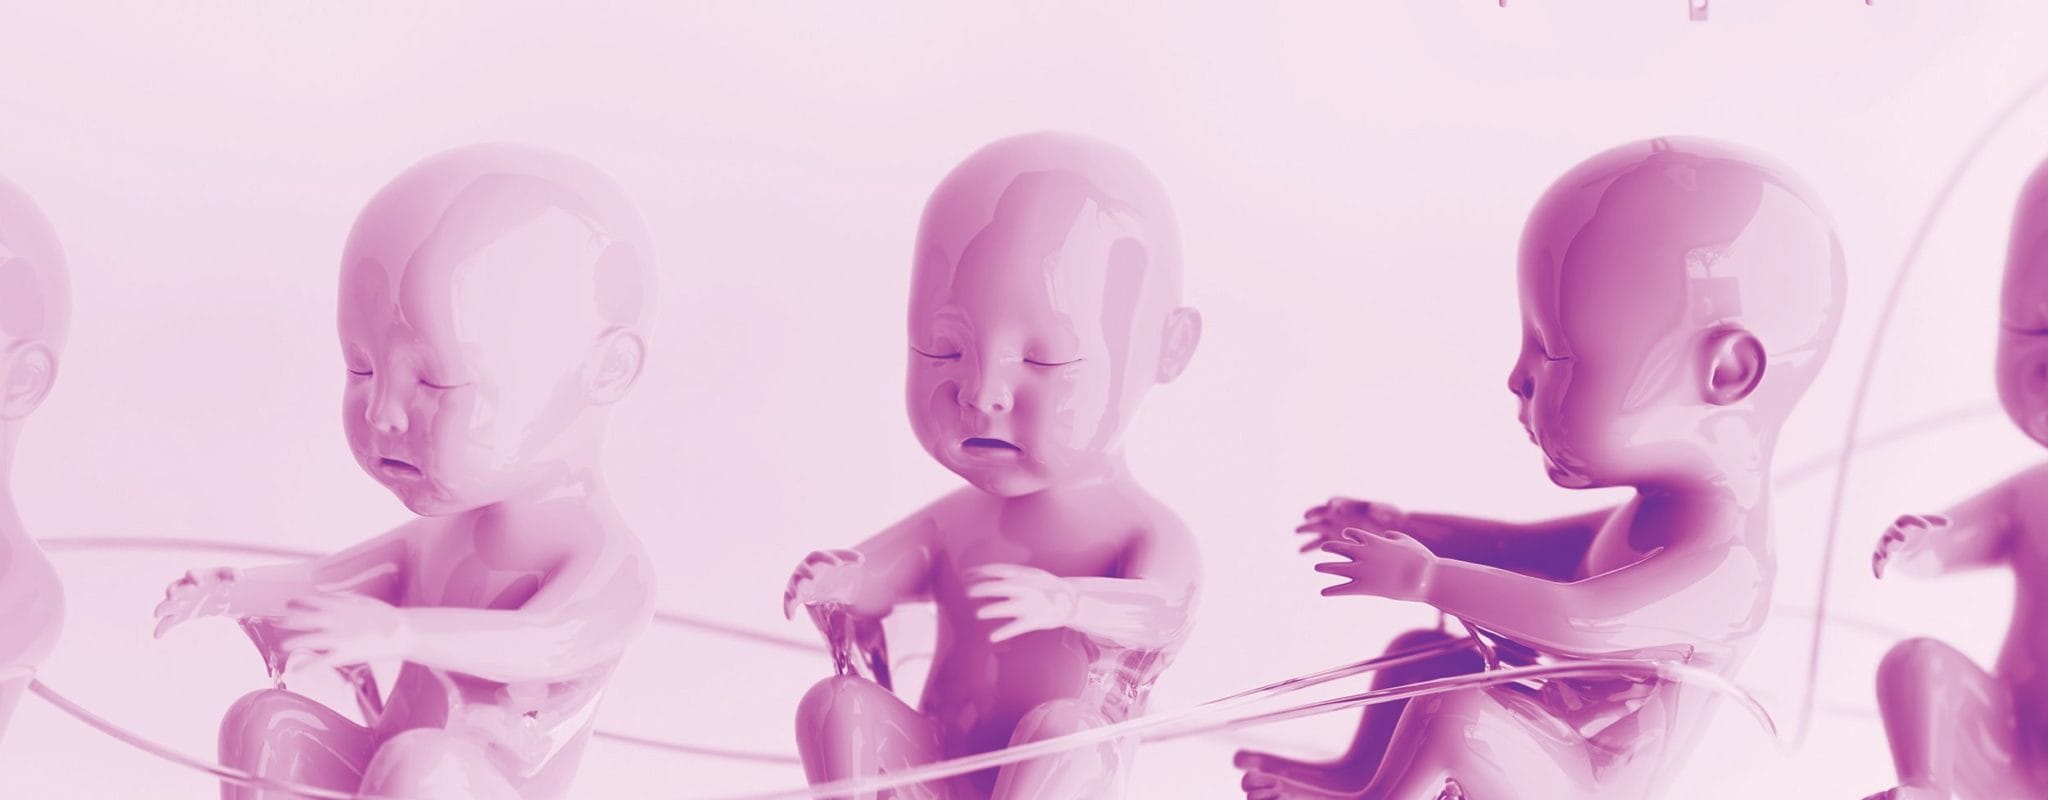 Bébés à la carte, procréation in vitro… Le Forum de bioéthique pose les enjeux liés à la reproduction